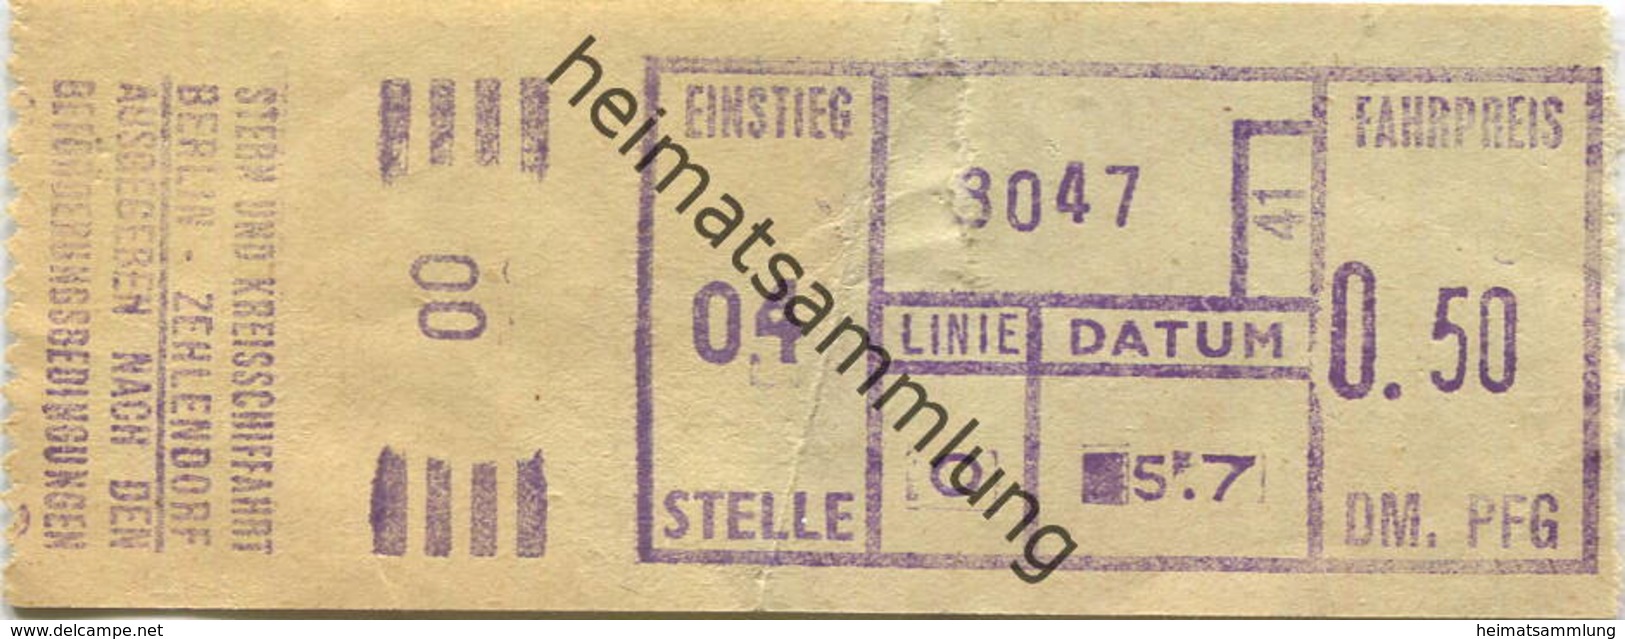 Deutschland - Berlin - Stern Und Kreisschifffahrt Berlin-Zehlendorf - Fahrkarte 50 PFG - Europa